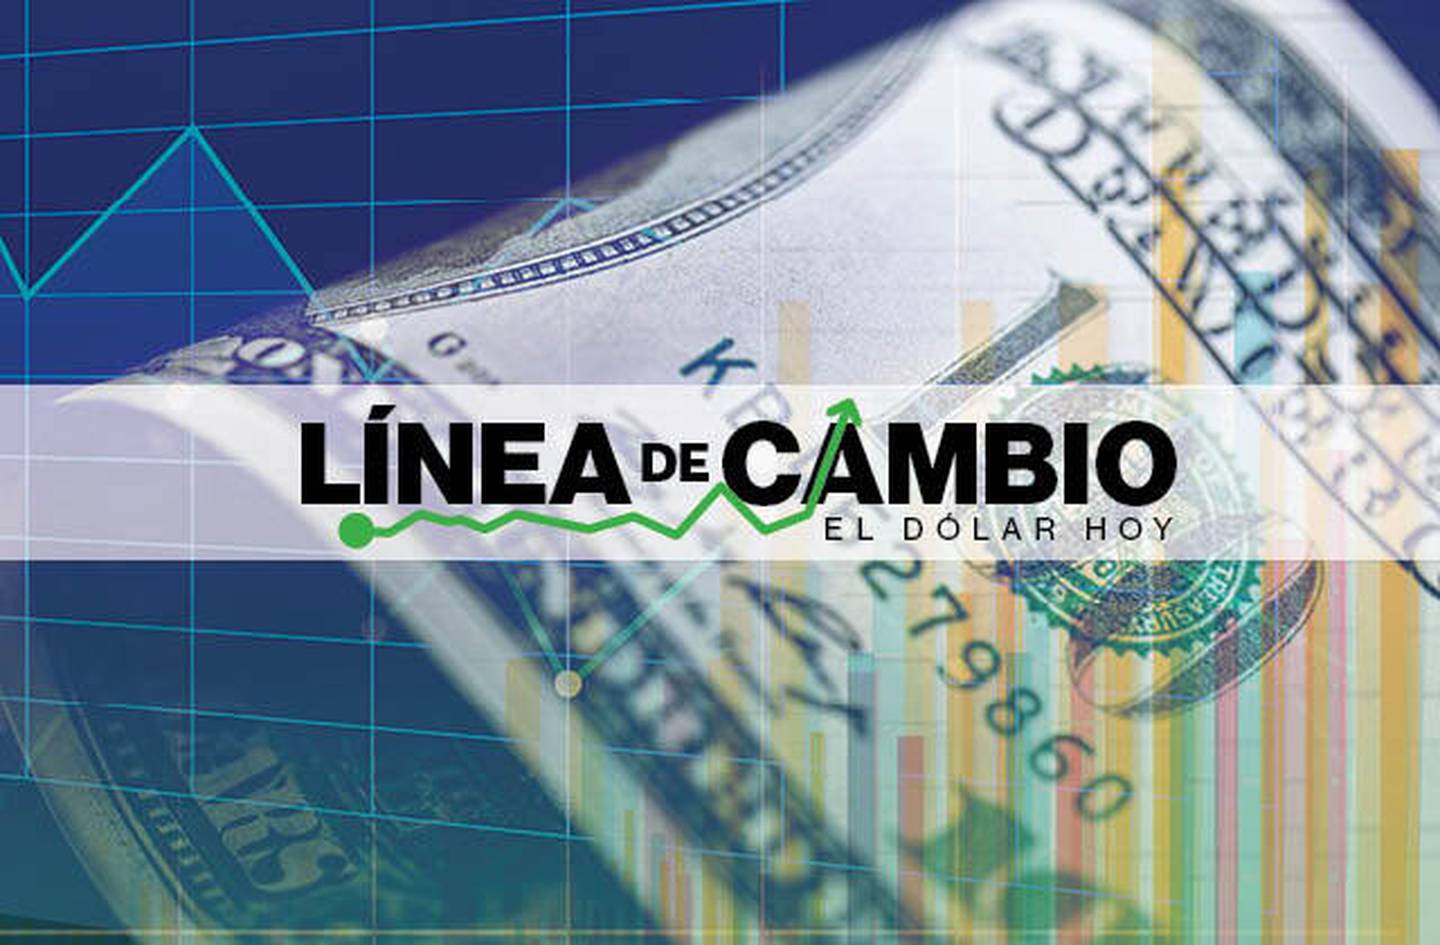 Dólar hoy: Sol de Perú fue la divisa que más retrocedió en la región esta semana